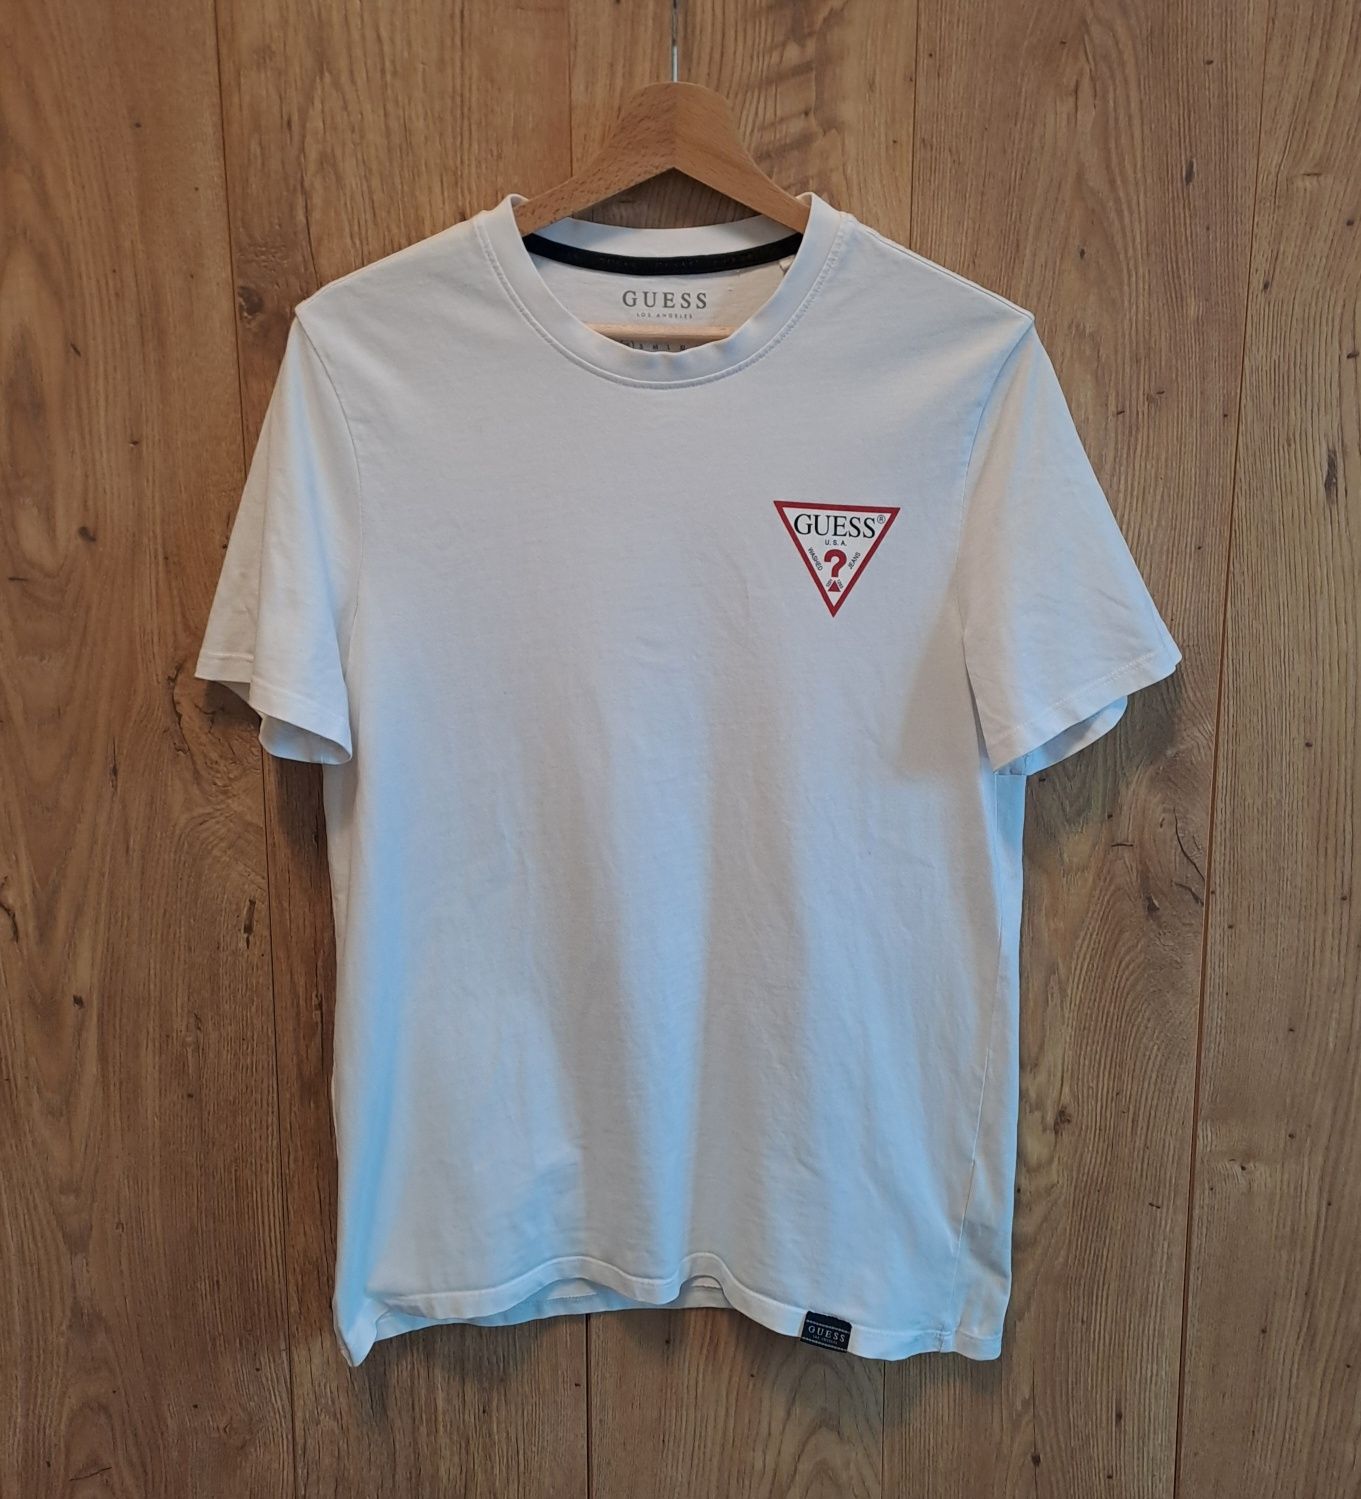 Męska/unisex biała koszulka t-shirt Guess r.XS fit S